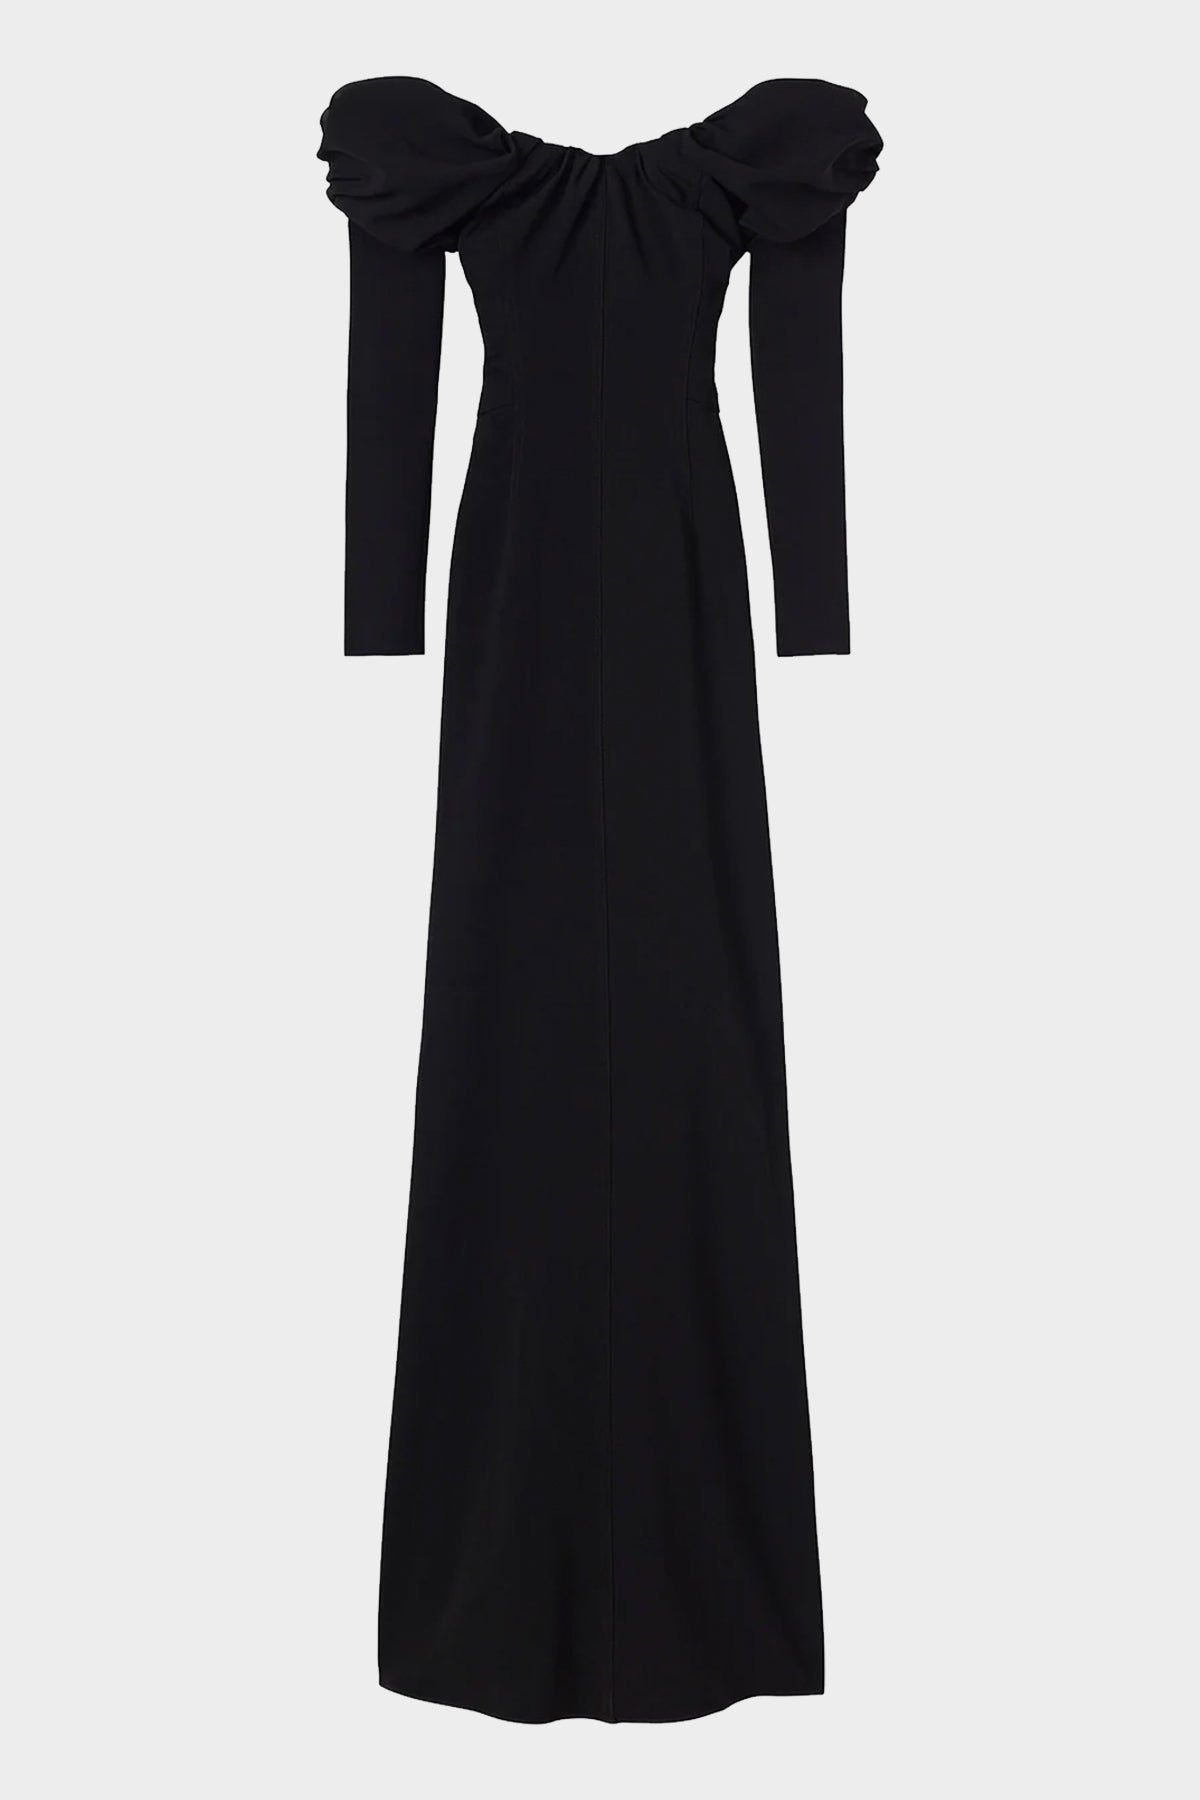 Nora Off Shoulder Gown in Black - shop-olivia.com